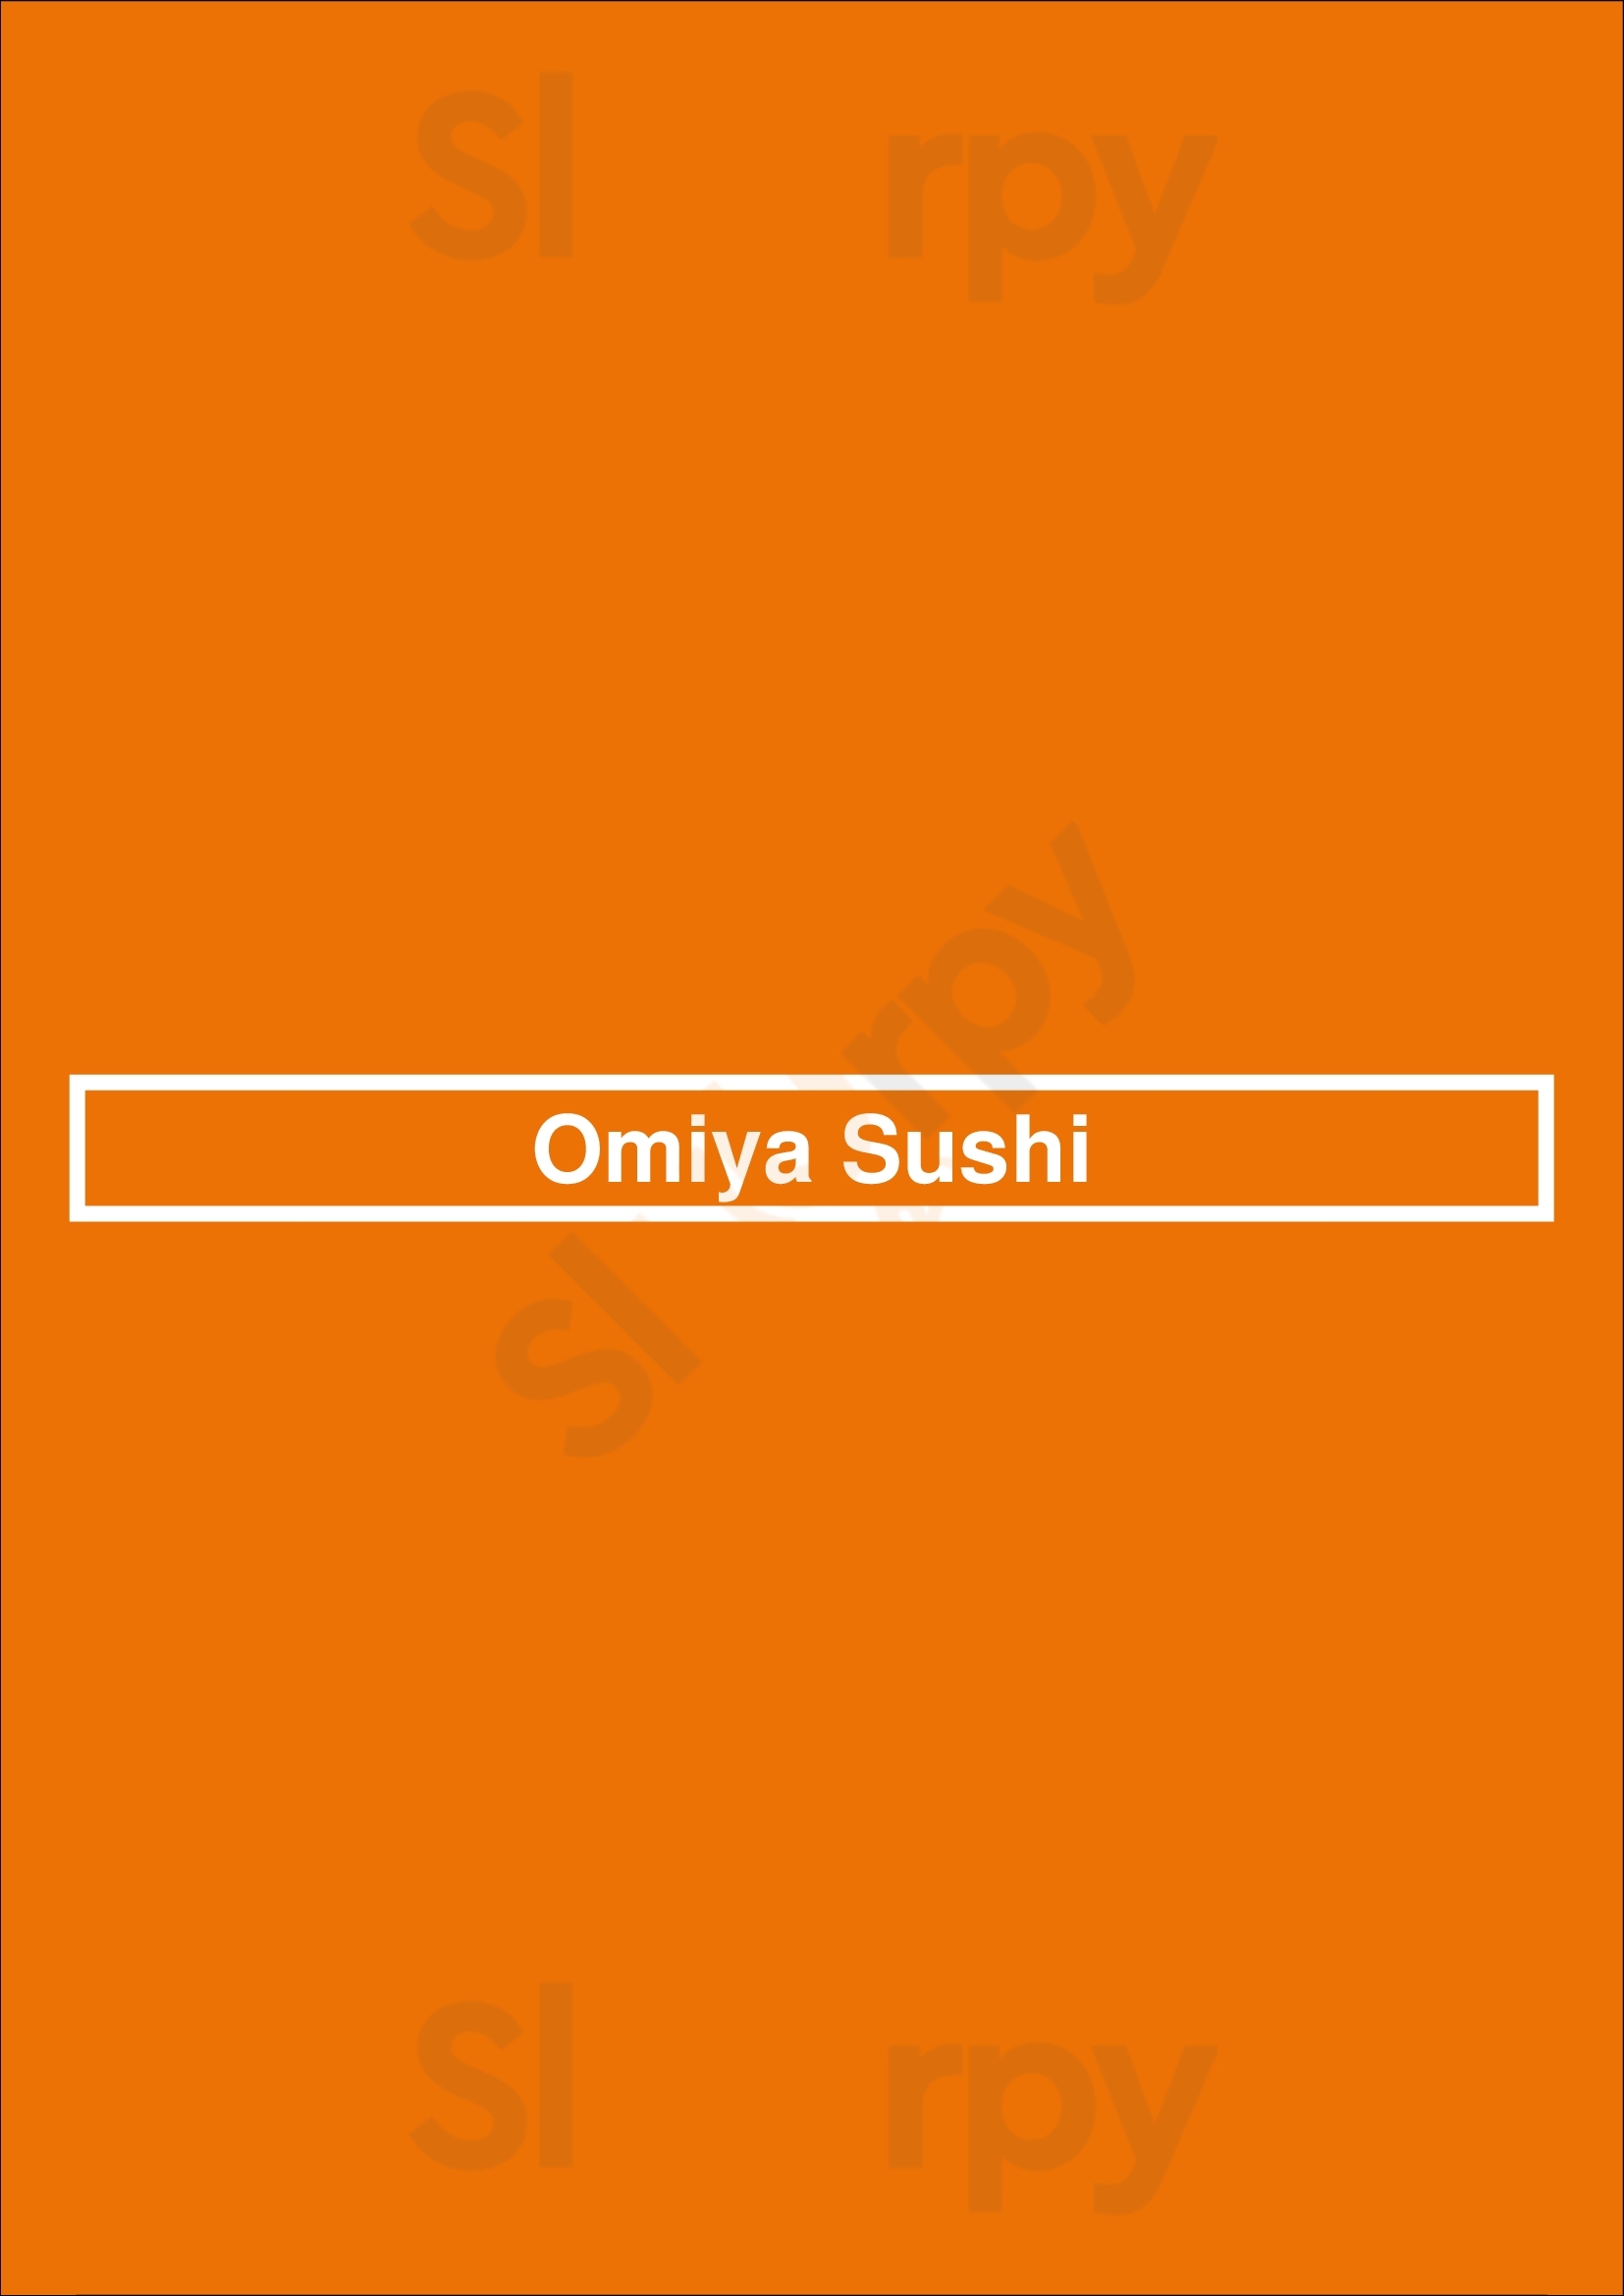 Omiya Sushi Brooklyn Menu - 1